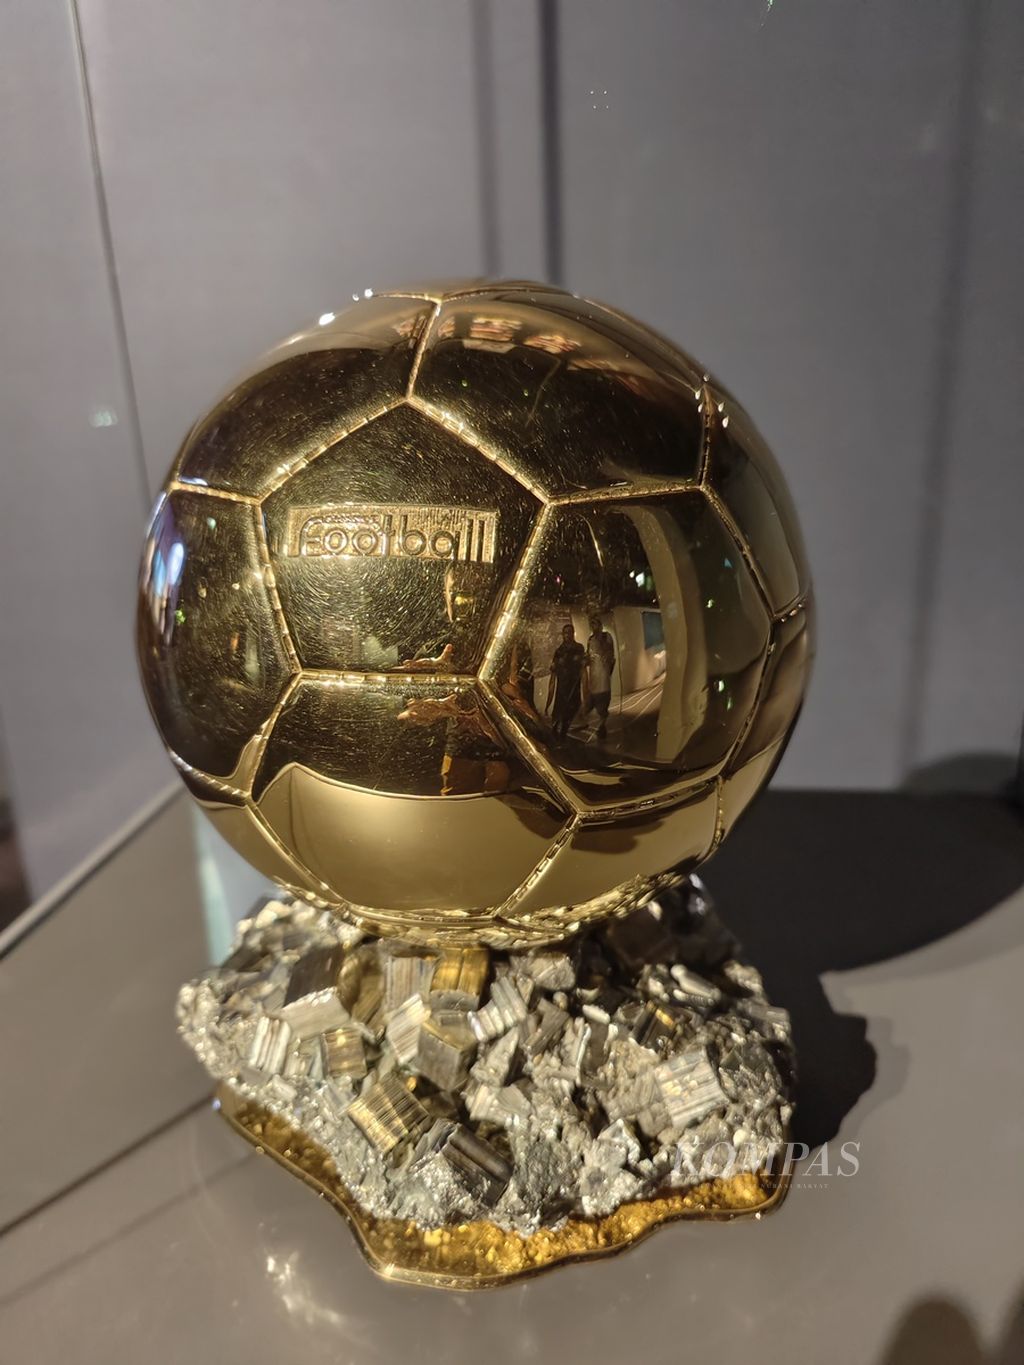 Replika trofi Ballon d'Or 2015 milik Lionel Messi yang dipinjamkan untuk dipamerkan di Museum Olimpiade dan Olahraga 3-2-1, Doha, Qatar. Foto diambil pada 30 November 2022.